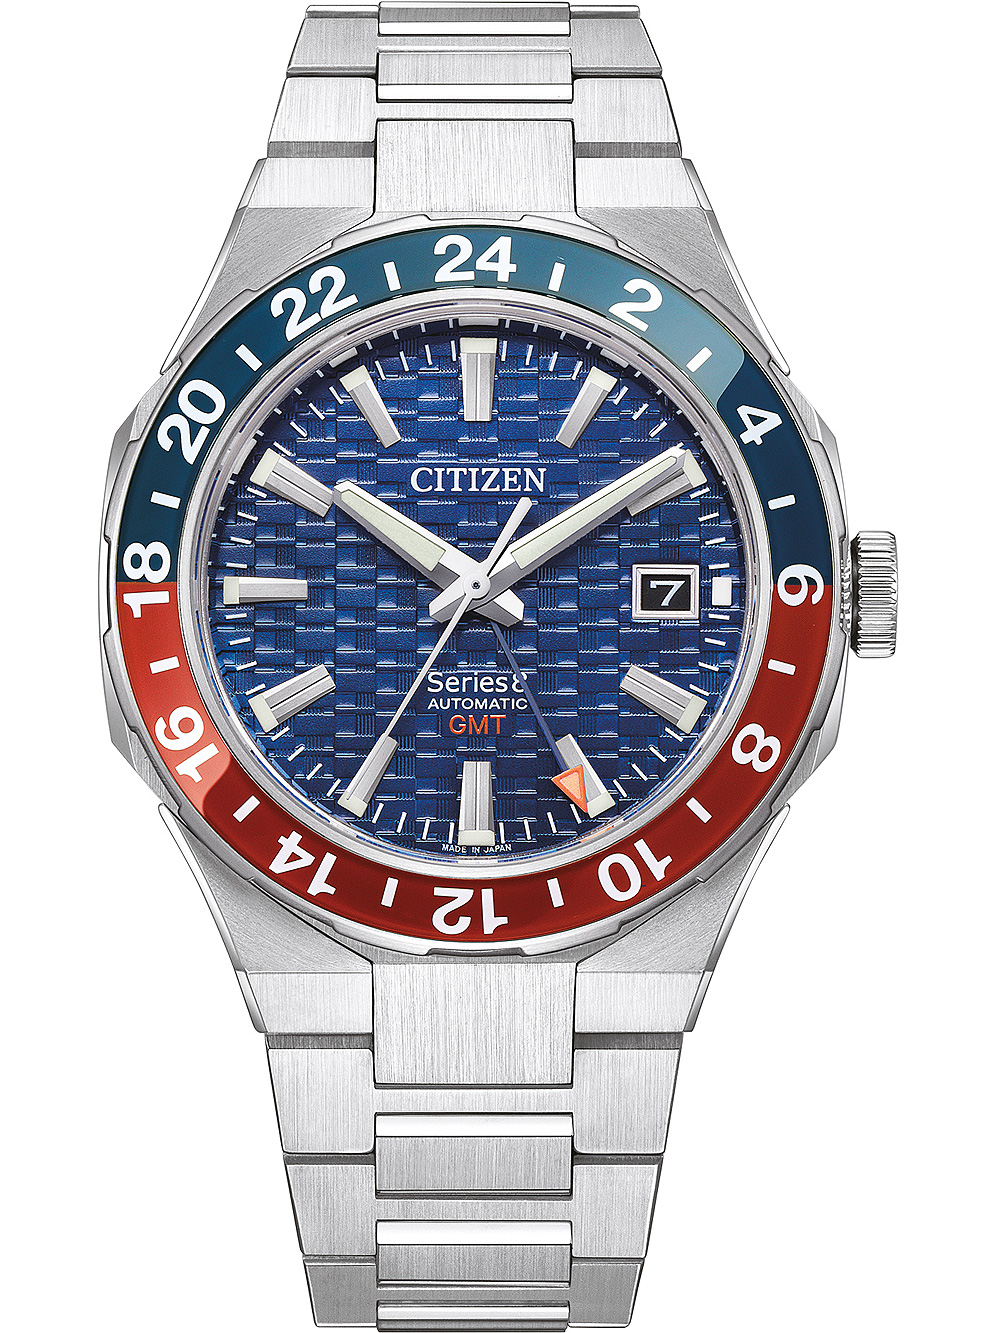 Pánské hodinky Citizen NB6030-59L Series 8 Automatic GMT